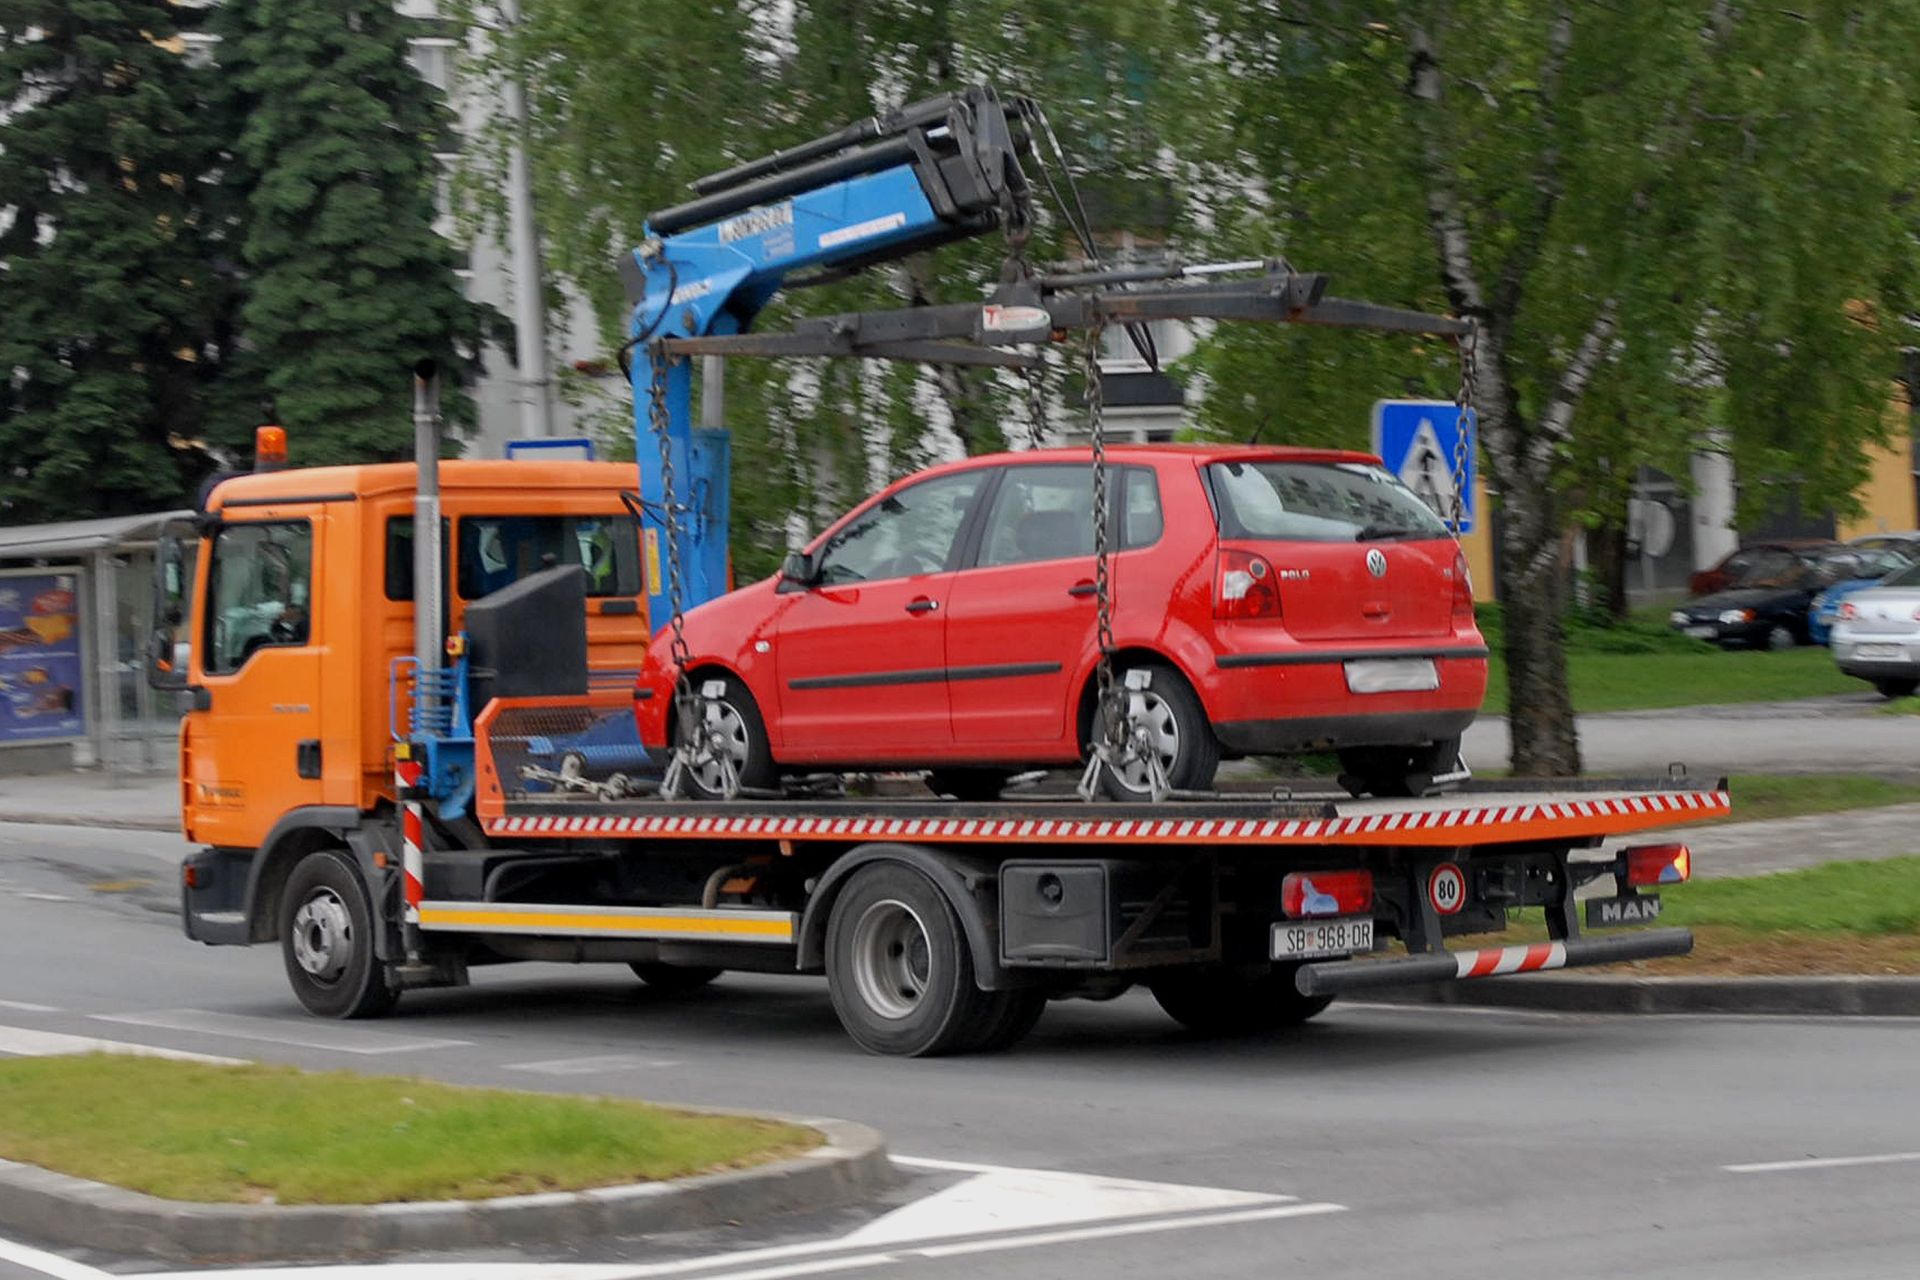 14.05.2012., Slavonski Brod - Vozilo "pauk" u akciji uklanjanja nepravilno parkiranih automobila. 
Photo: Ivica Galovic/PIXSELL